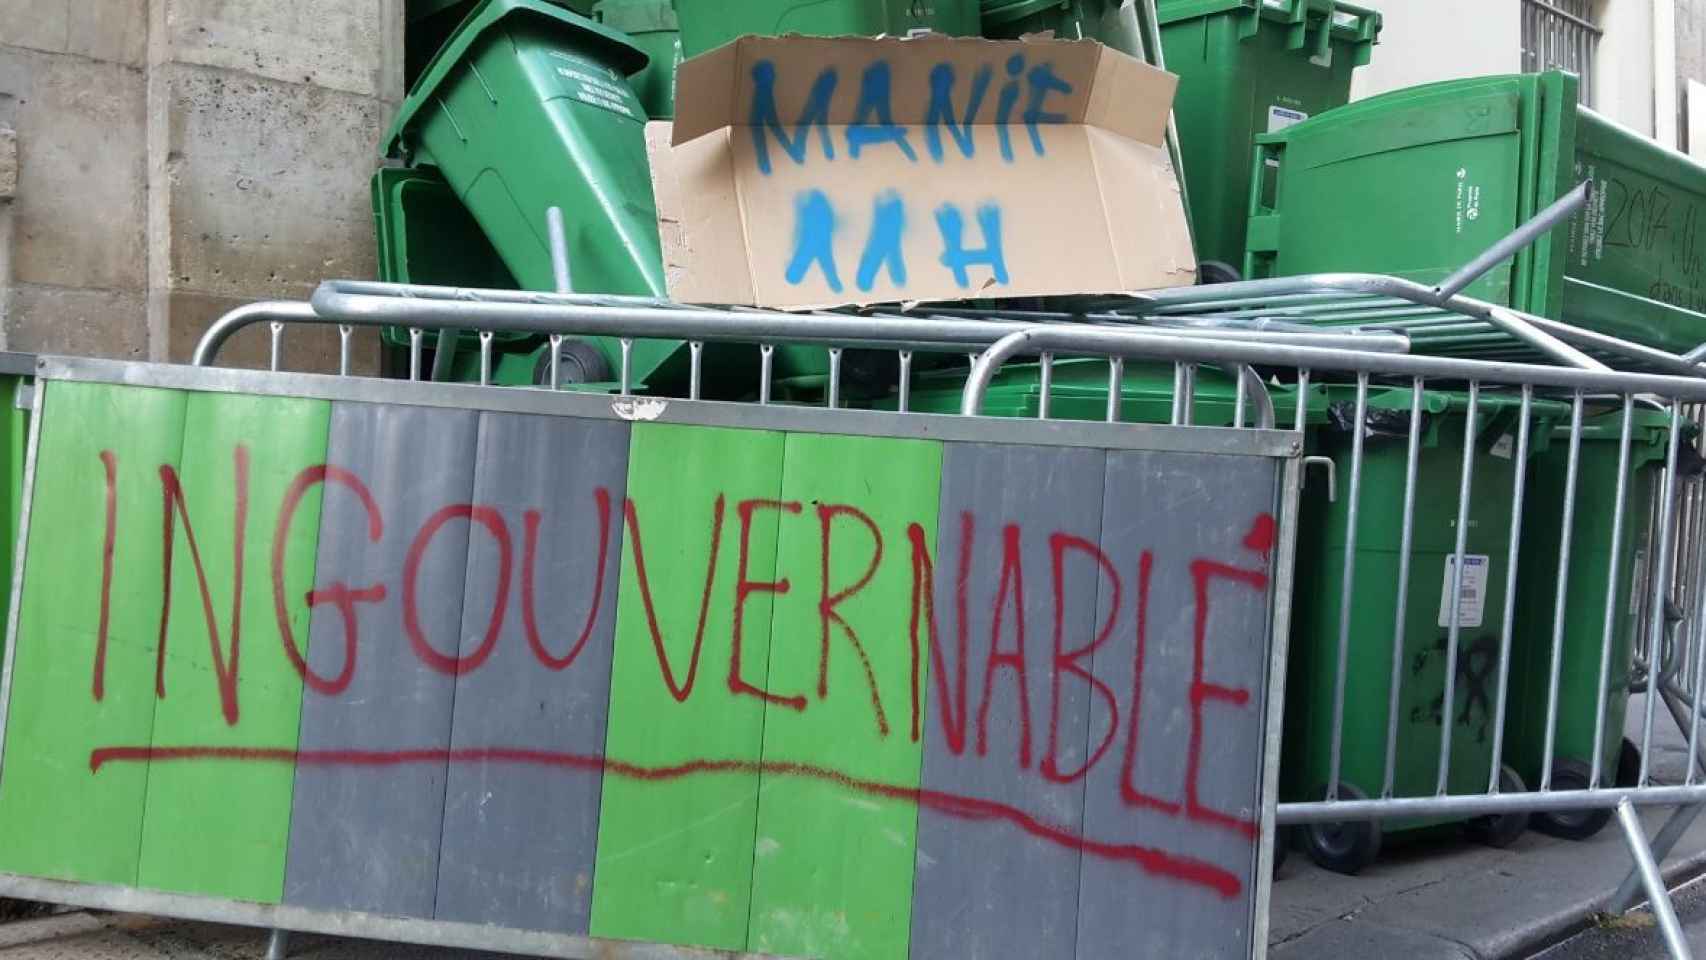 El lideo Sophie Germain, en el centro de París, amanecía bloqueado este jueves en protesta por la situación política.